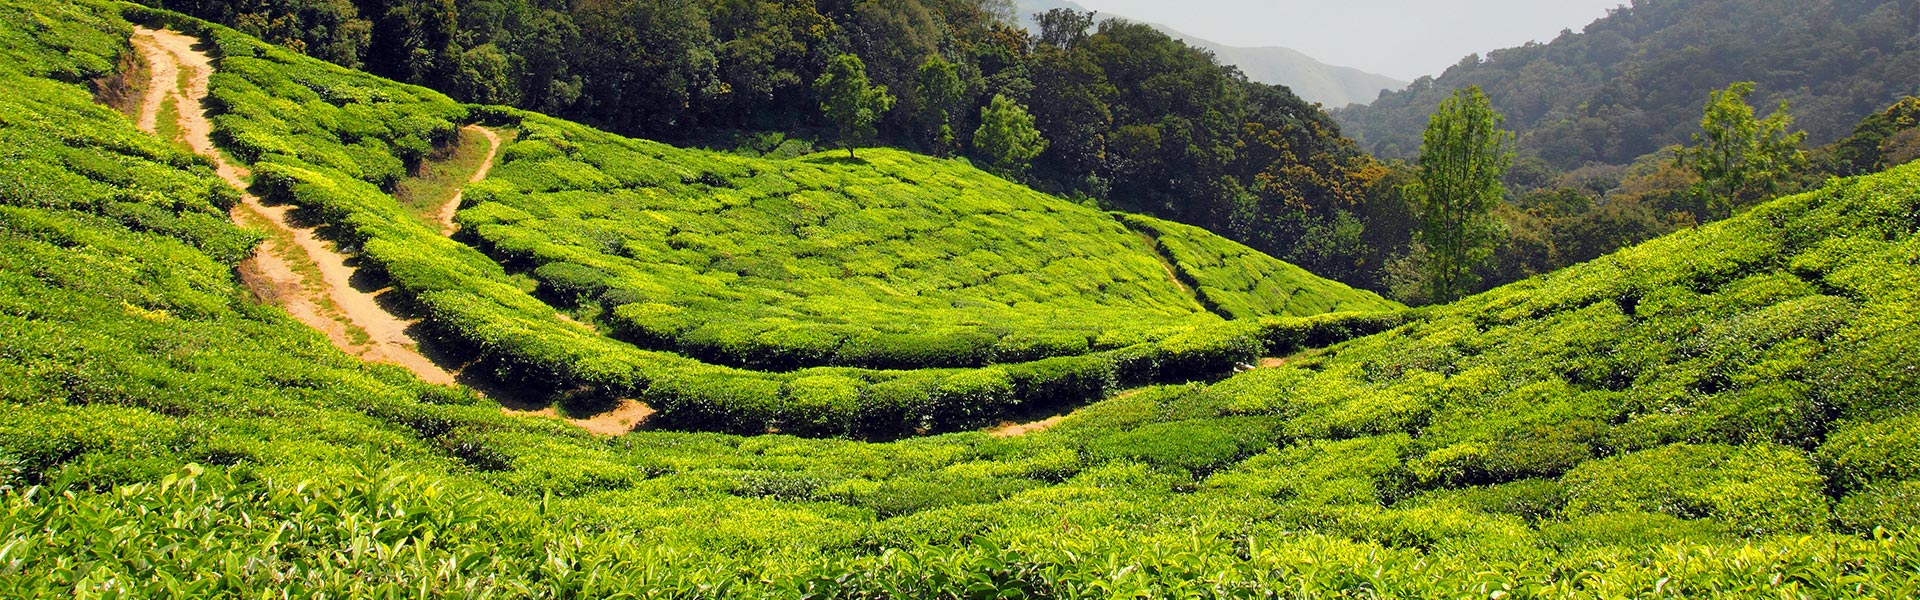  Plantaciones de té